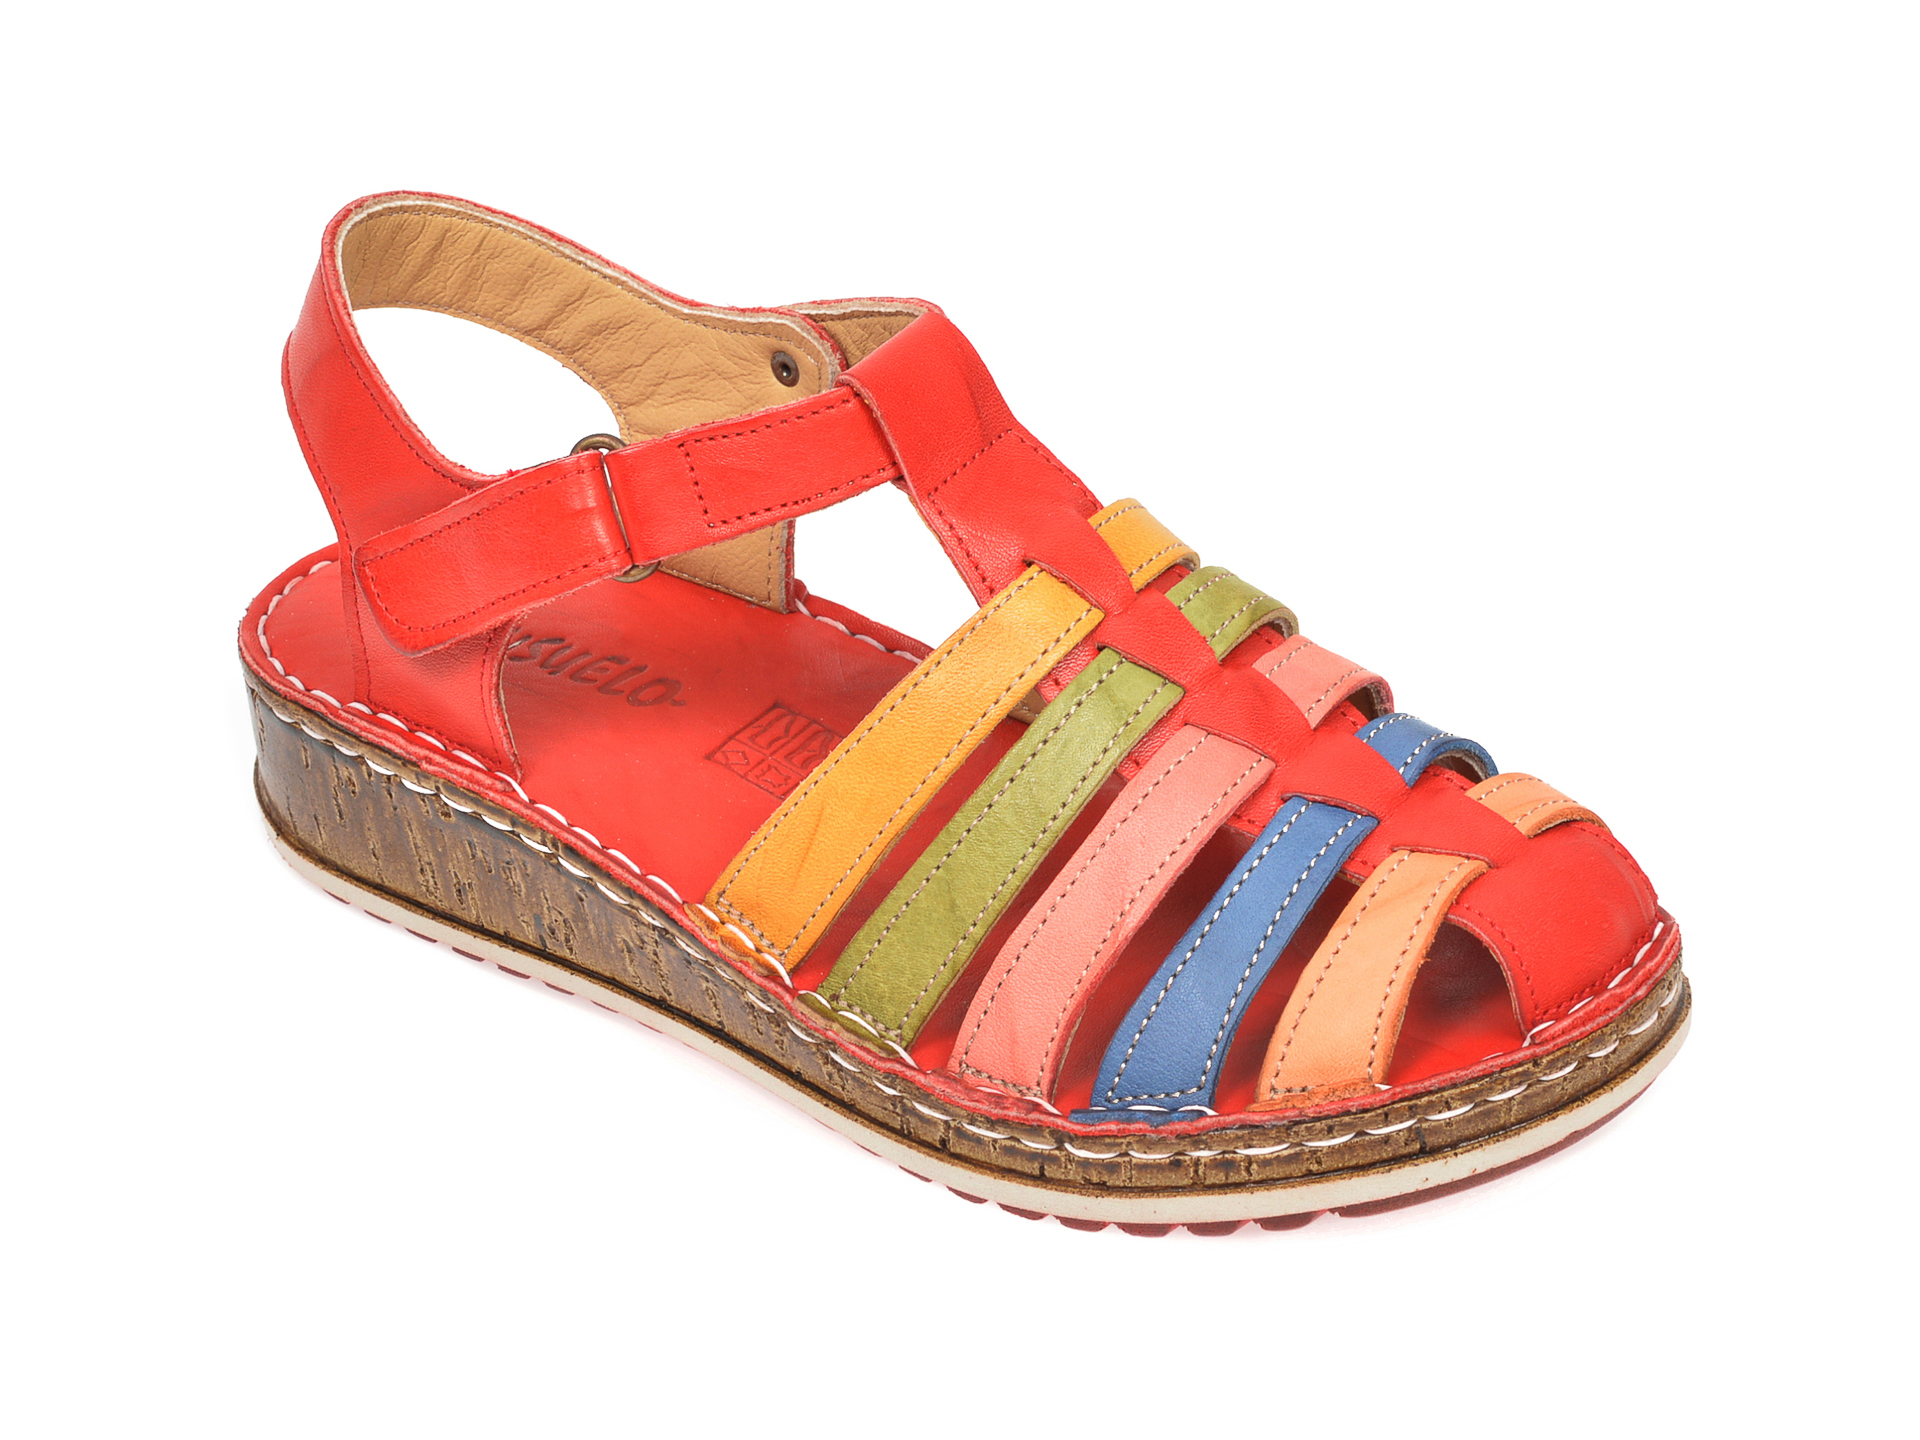 Sandale CONSUELO multicolore, 1372, din piele naturala